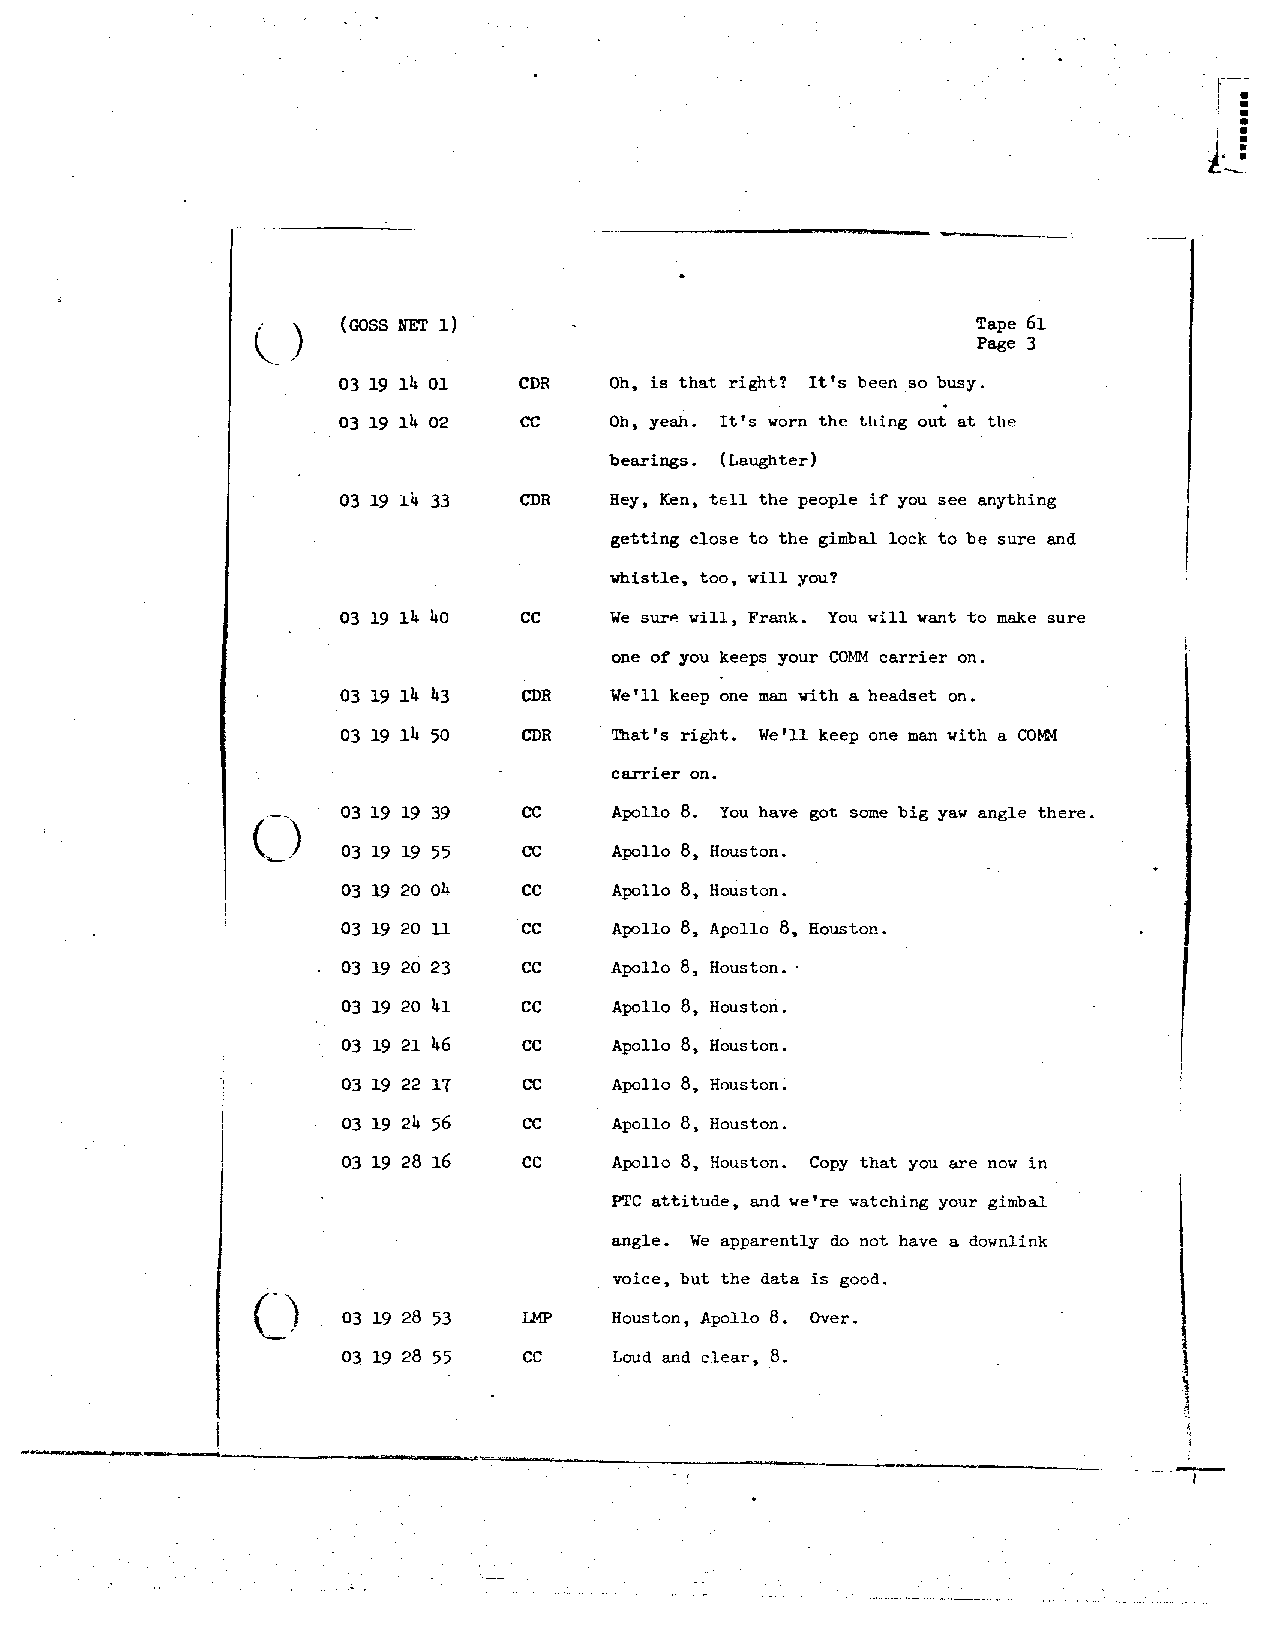 Page 487 of Apollo 8’s original transcript